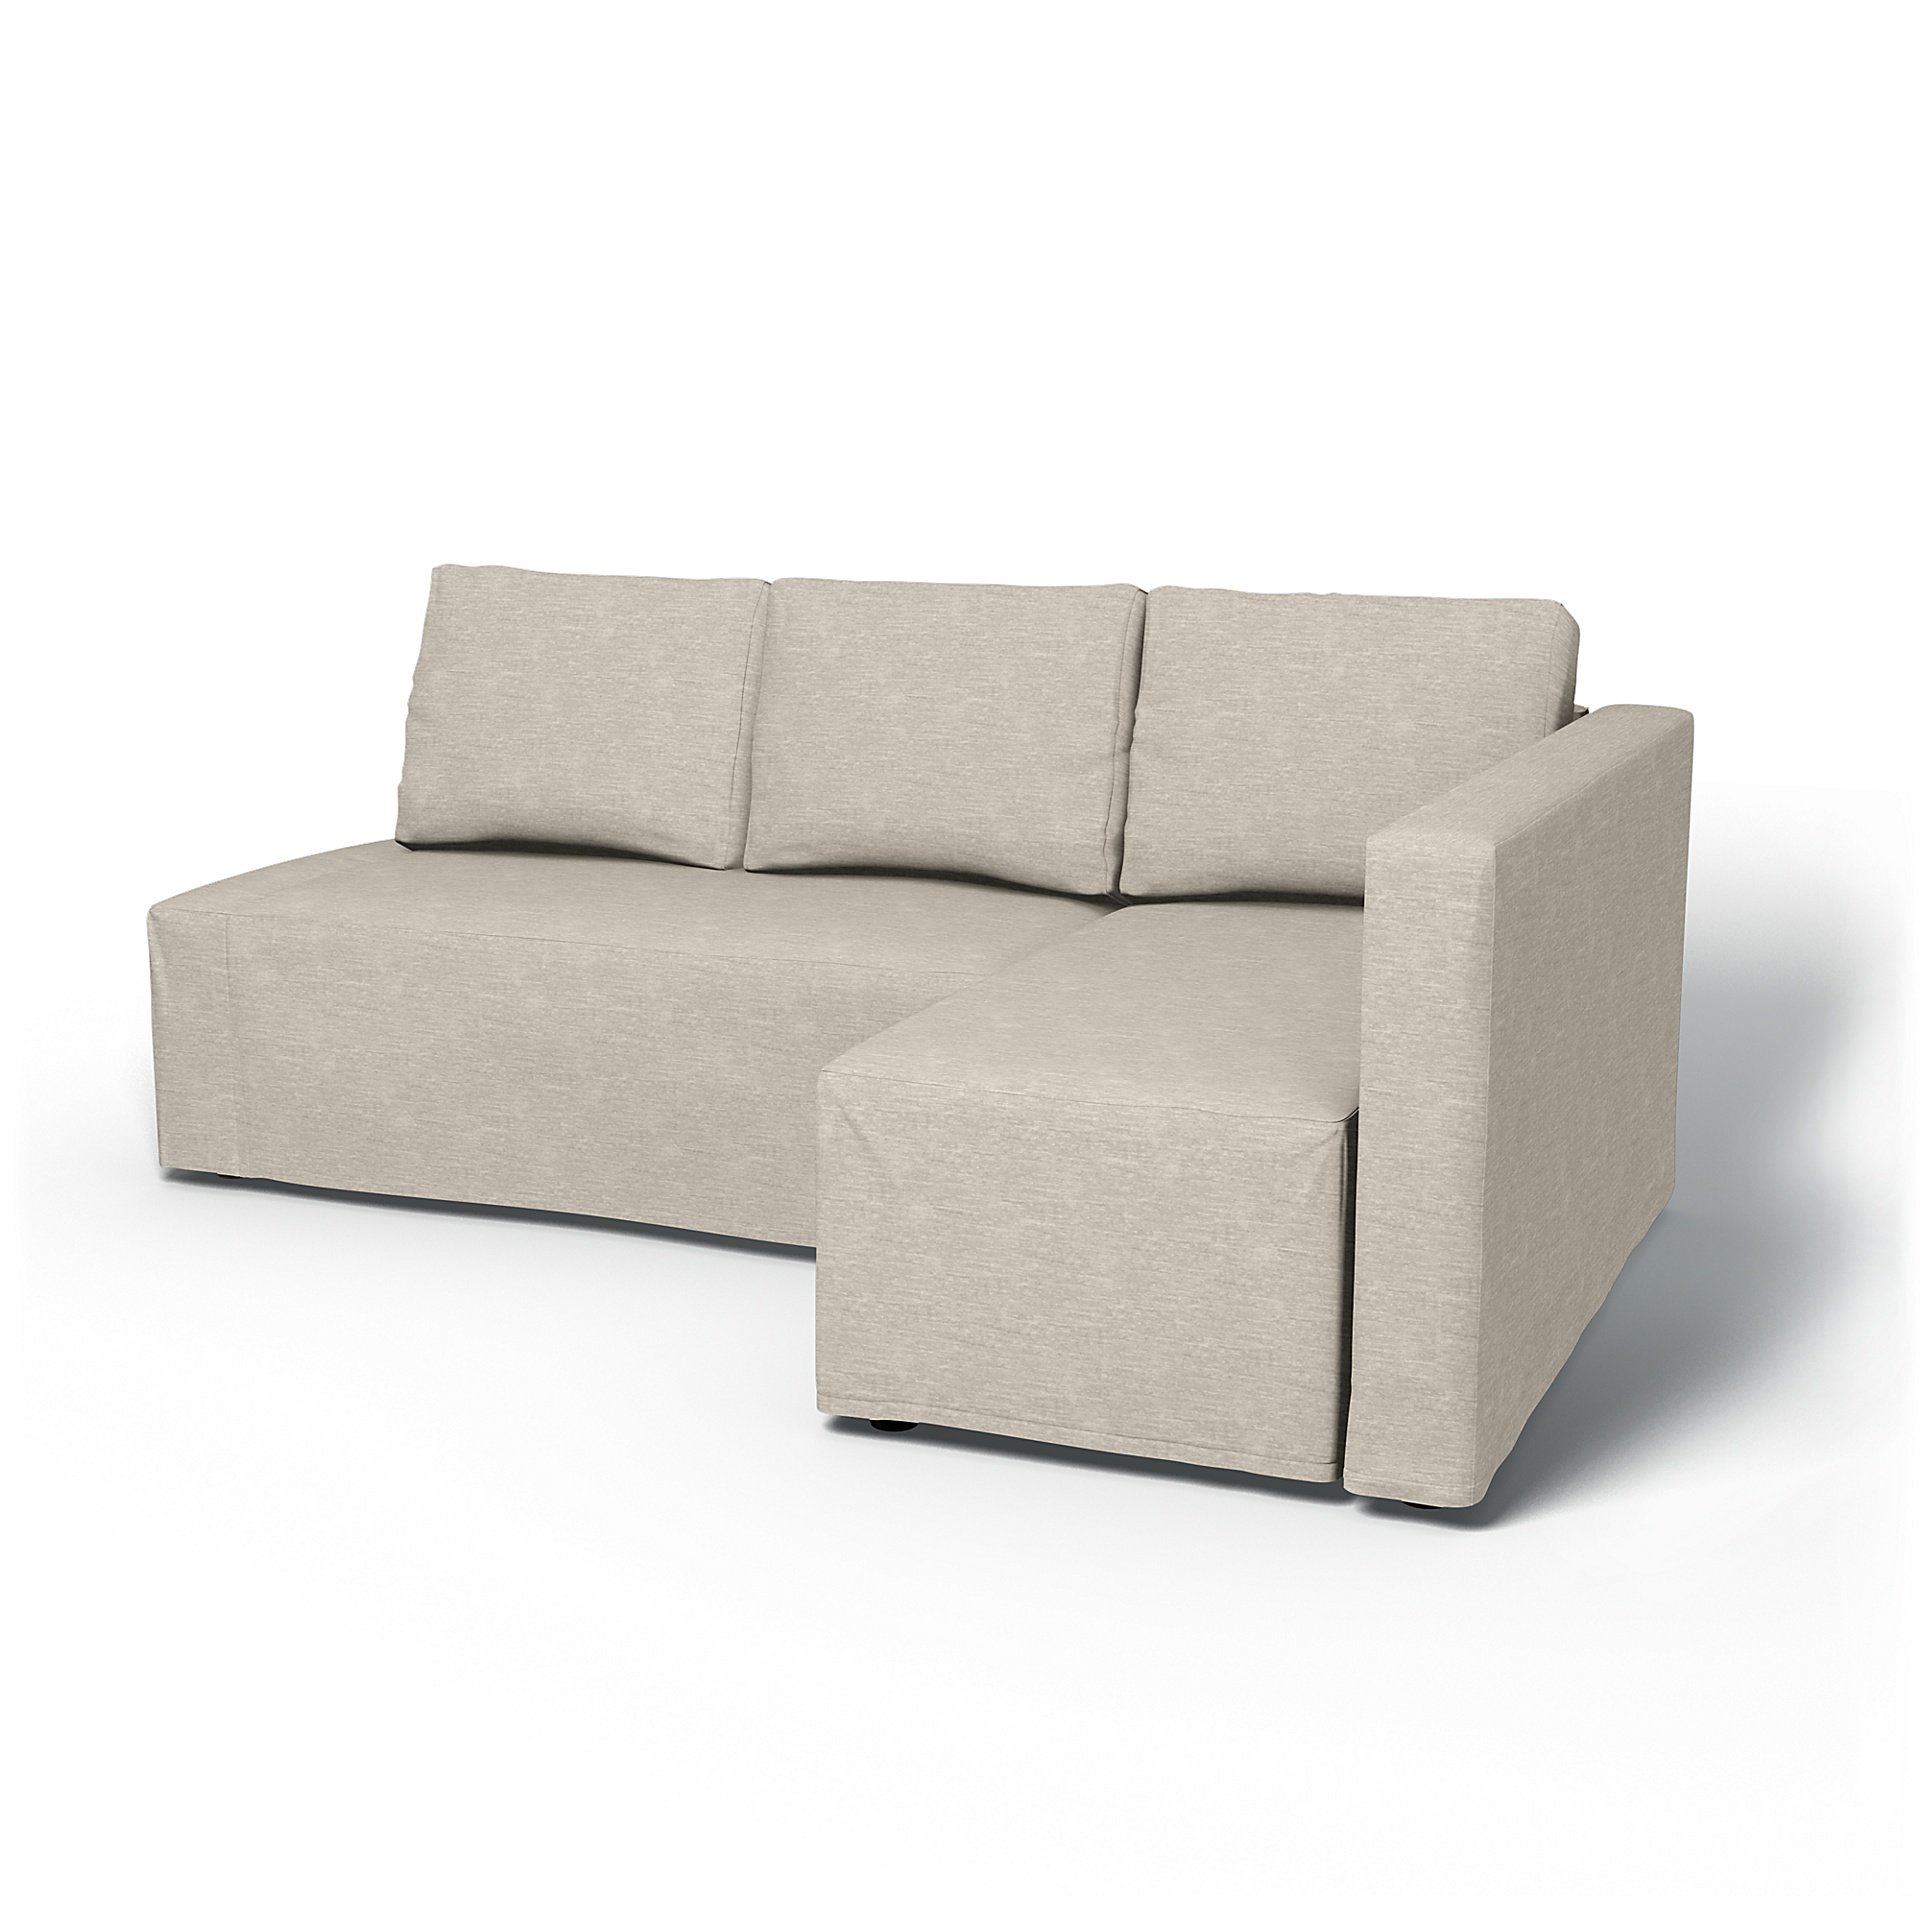 IKEA - Friheten Sofa Bed with Right Chaise Cover, Natural White, Velvet - Bemz